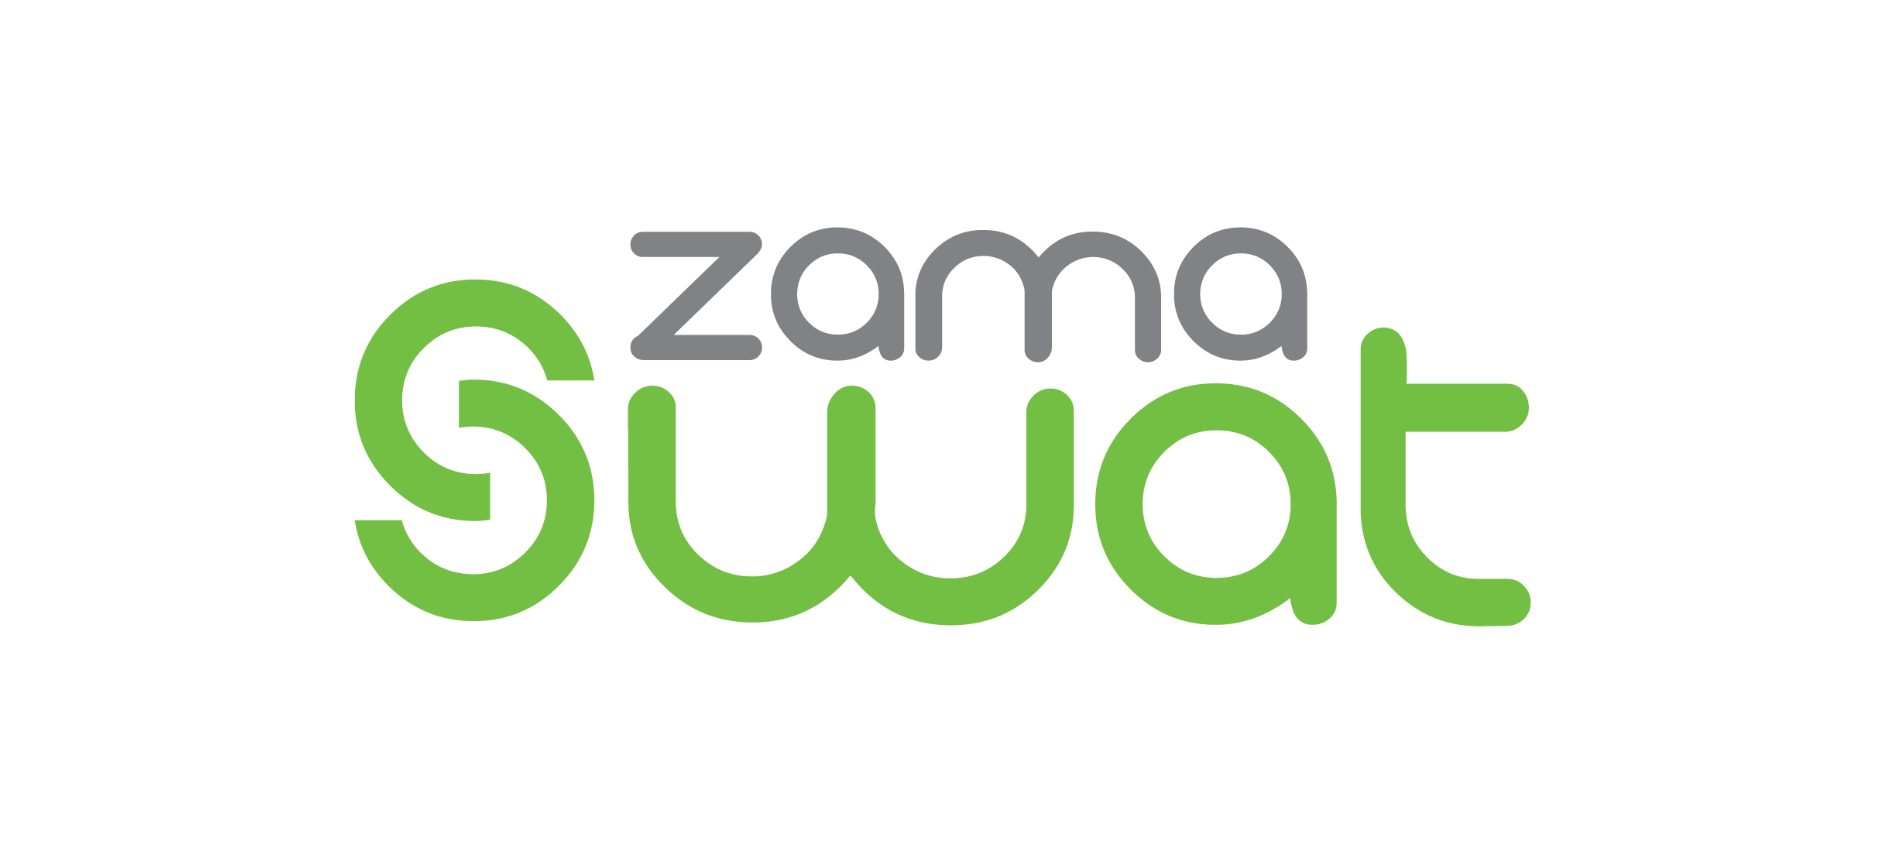 Zama Swat News